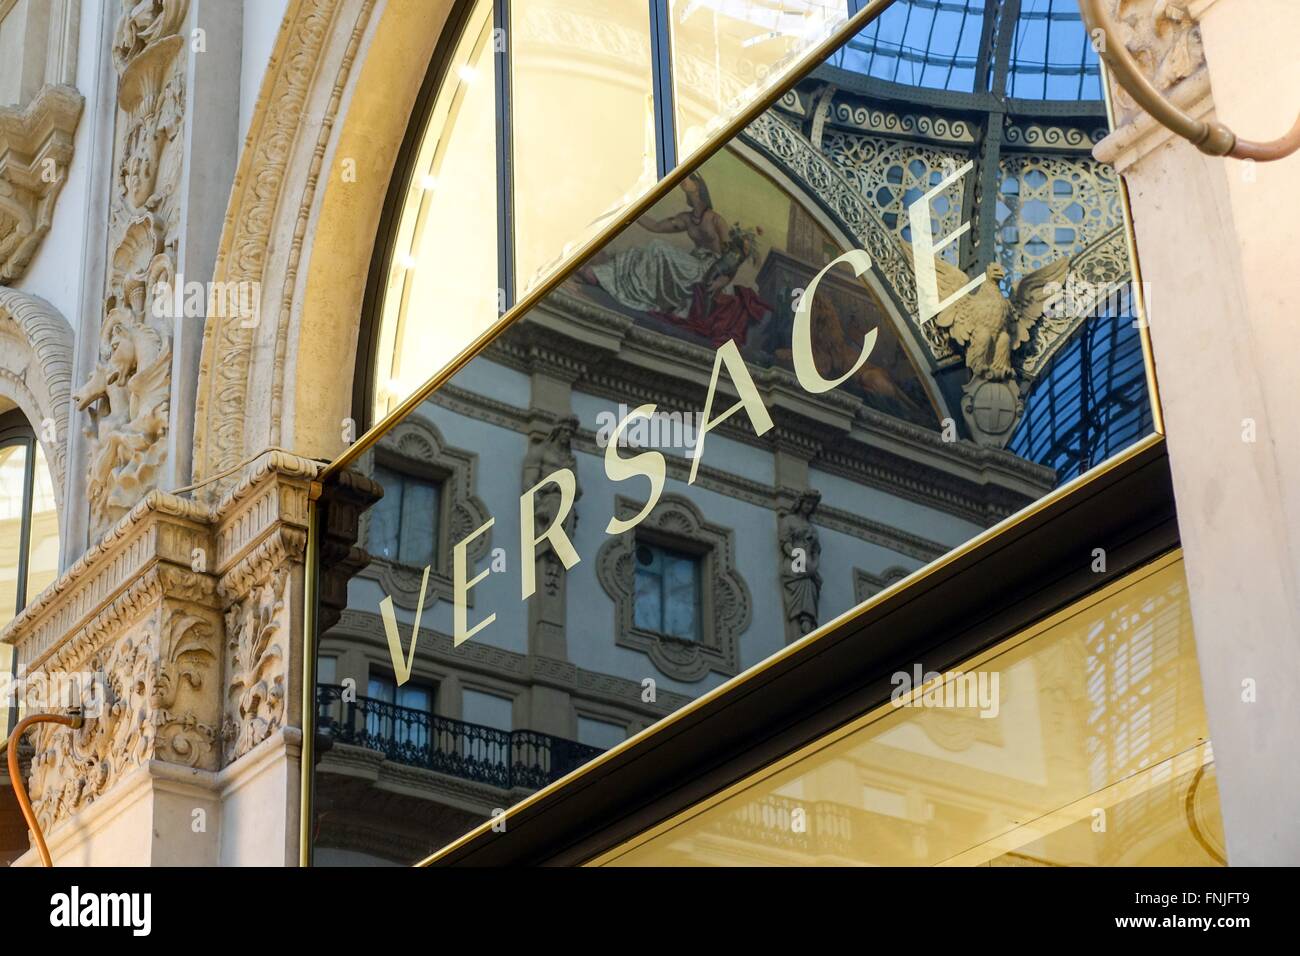 Italien: Versace-Boutique in der Galleria Vittorio Emanuele II, Milan. Foto vom 10. März 2016. Stockfoto